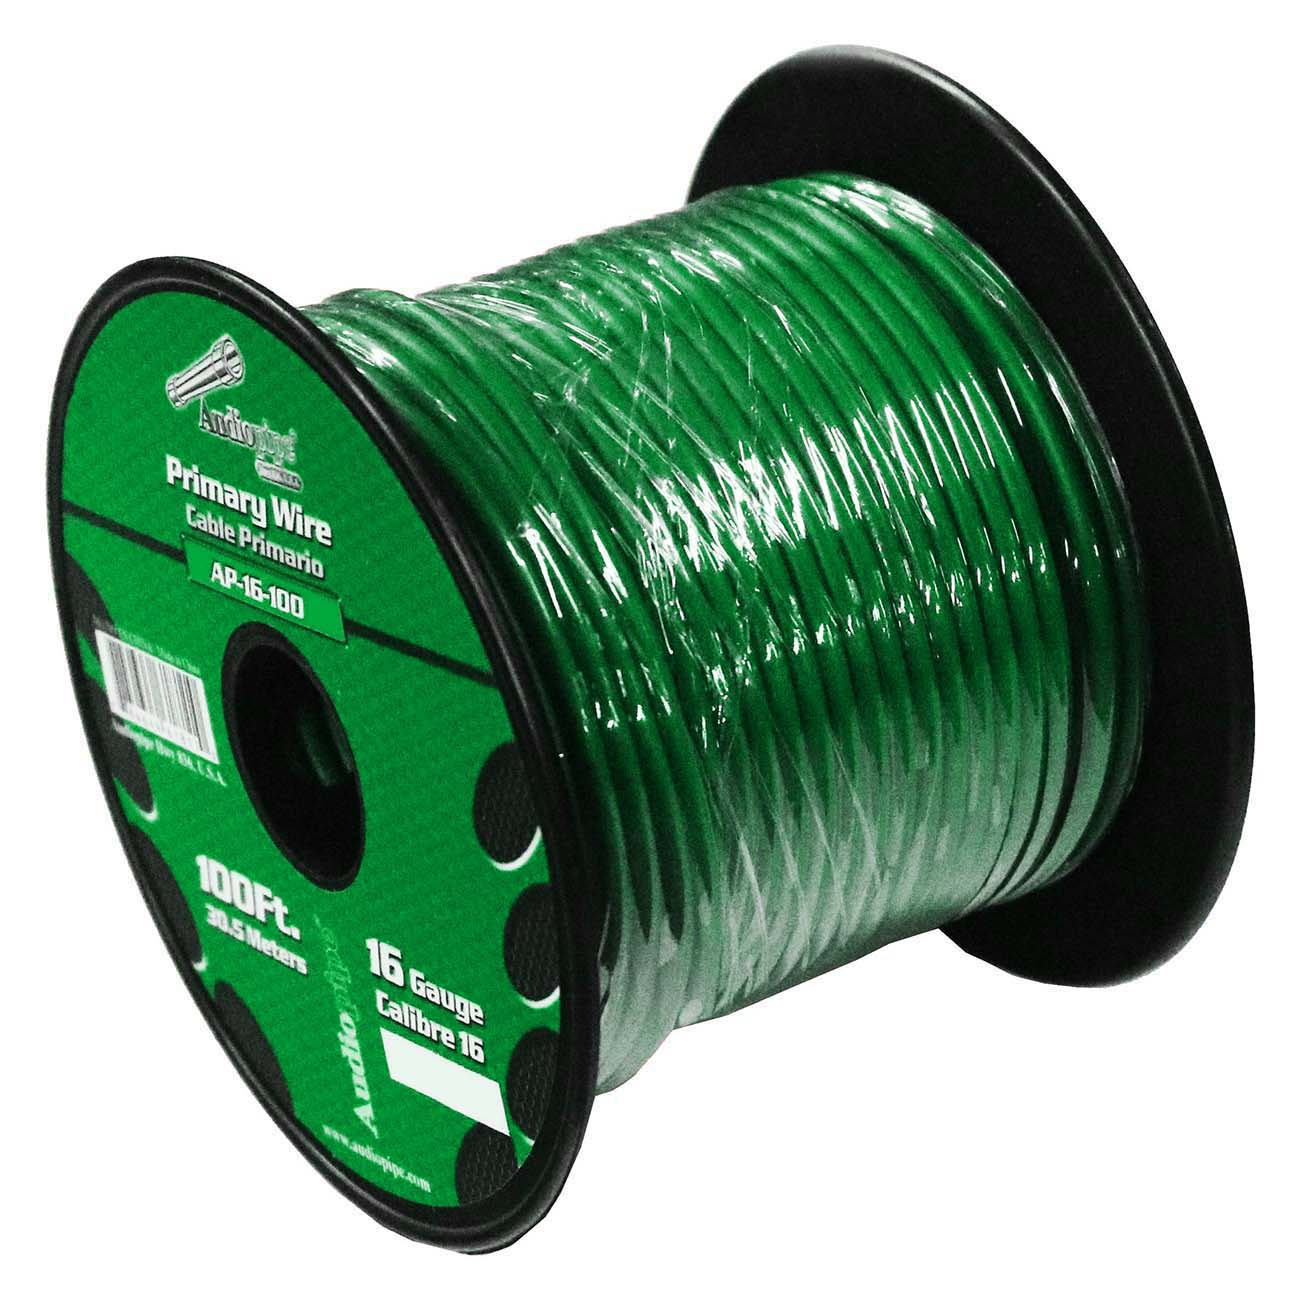 Audiopipe 16 Gauge 100ft Green Primary Wire